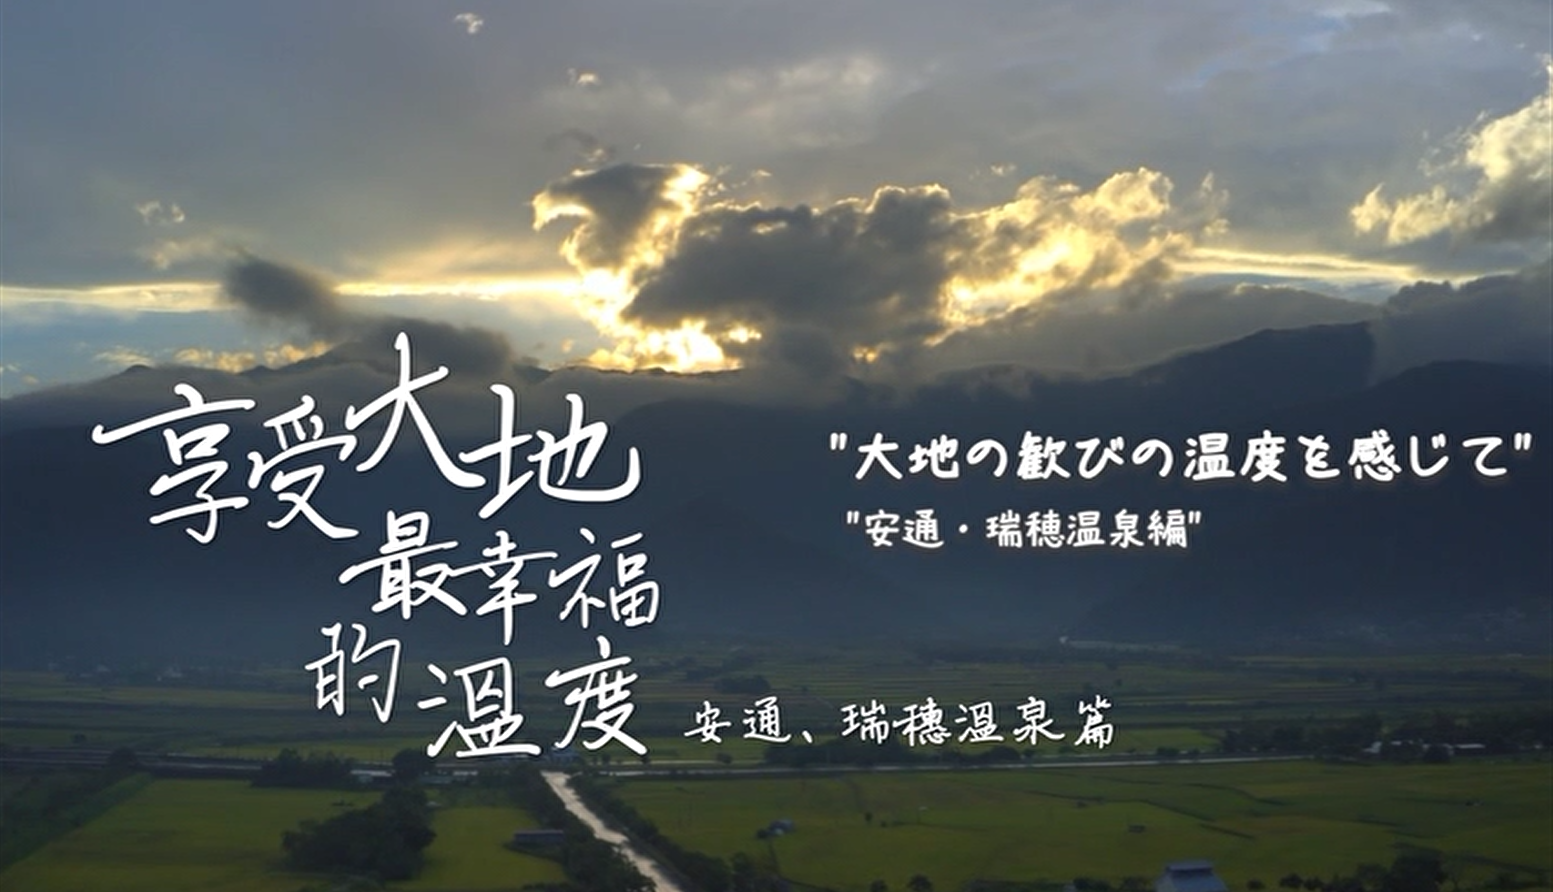 花東縱谷地質地景觀光宣傳影片：享受大地最幸福的溫度─安通、瑞穗溫泉篇 (日文)